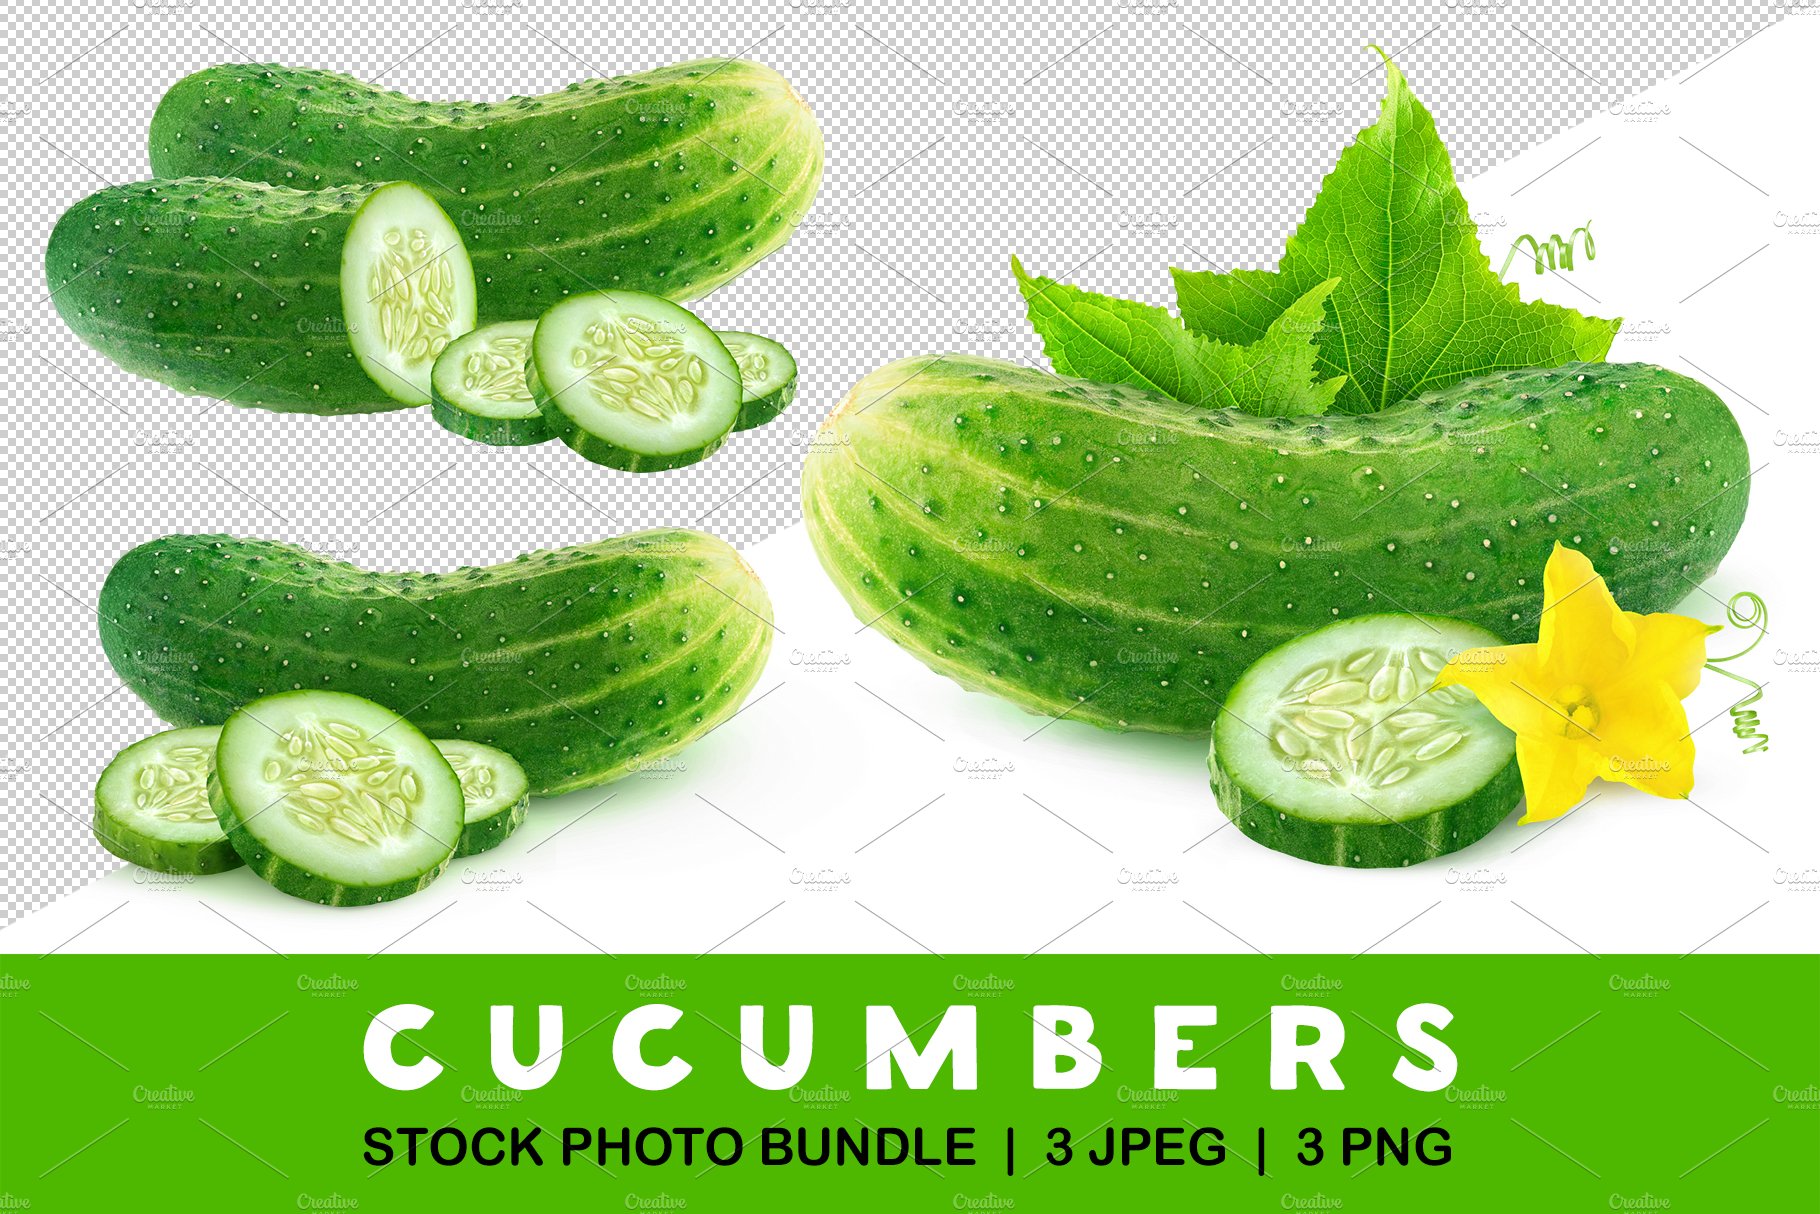 Cut cucumbers cover image.